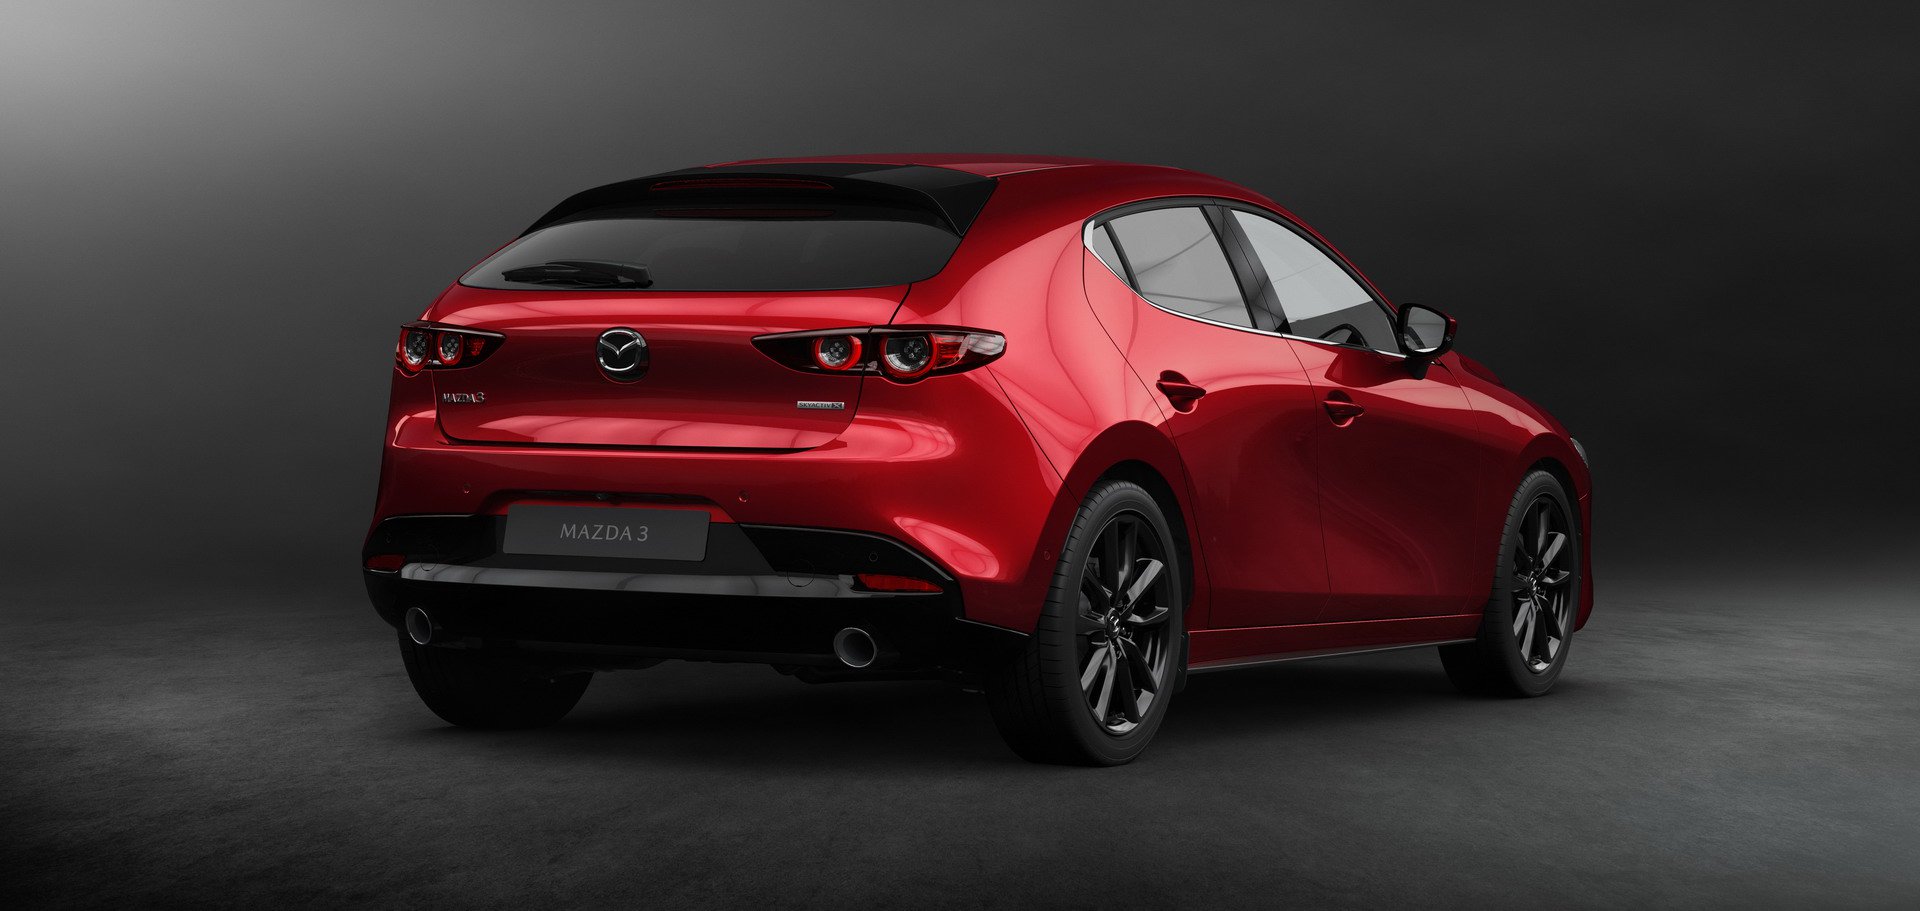 Malas noticias: No habrá una versión MPS del nuevo Mazda3